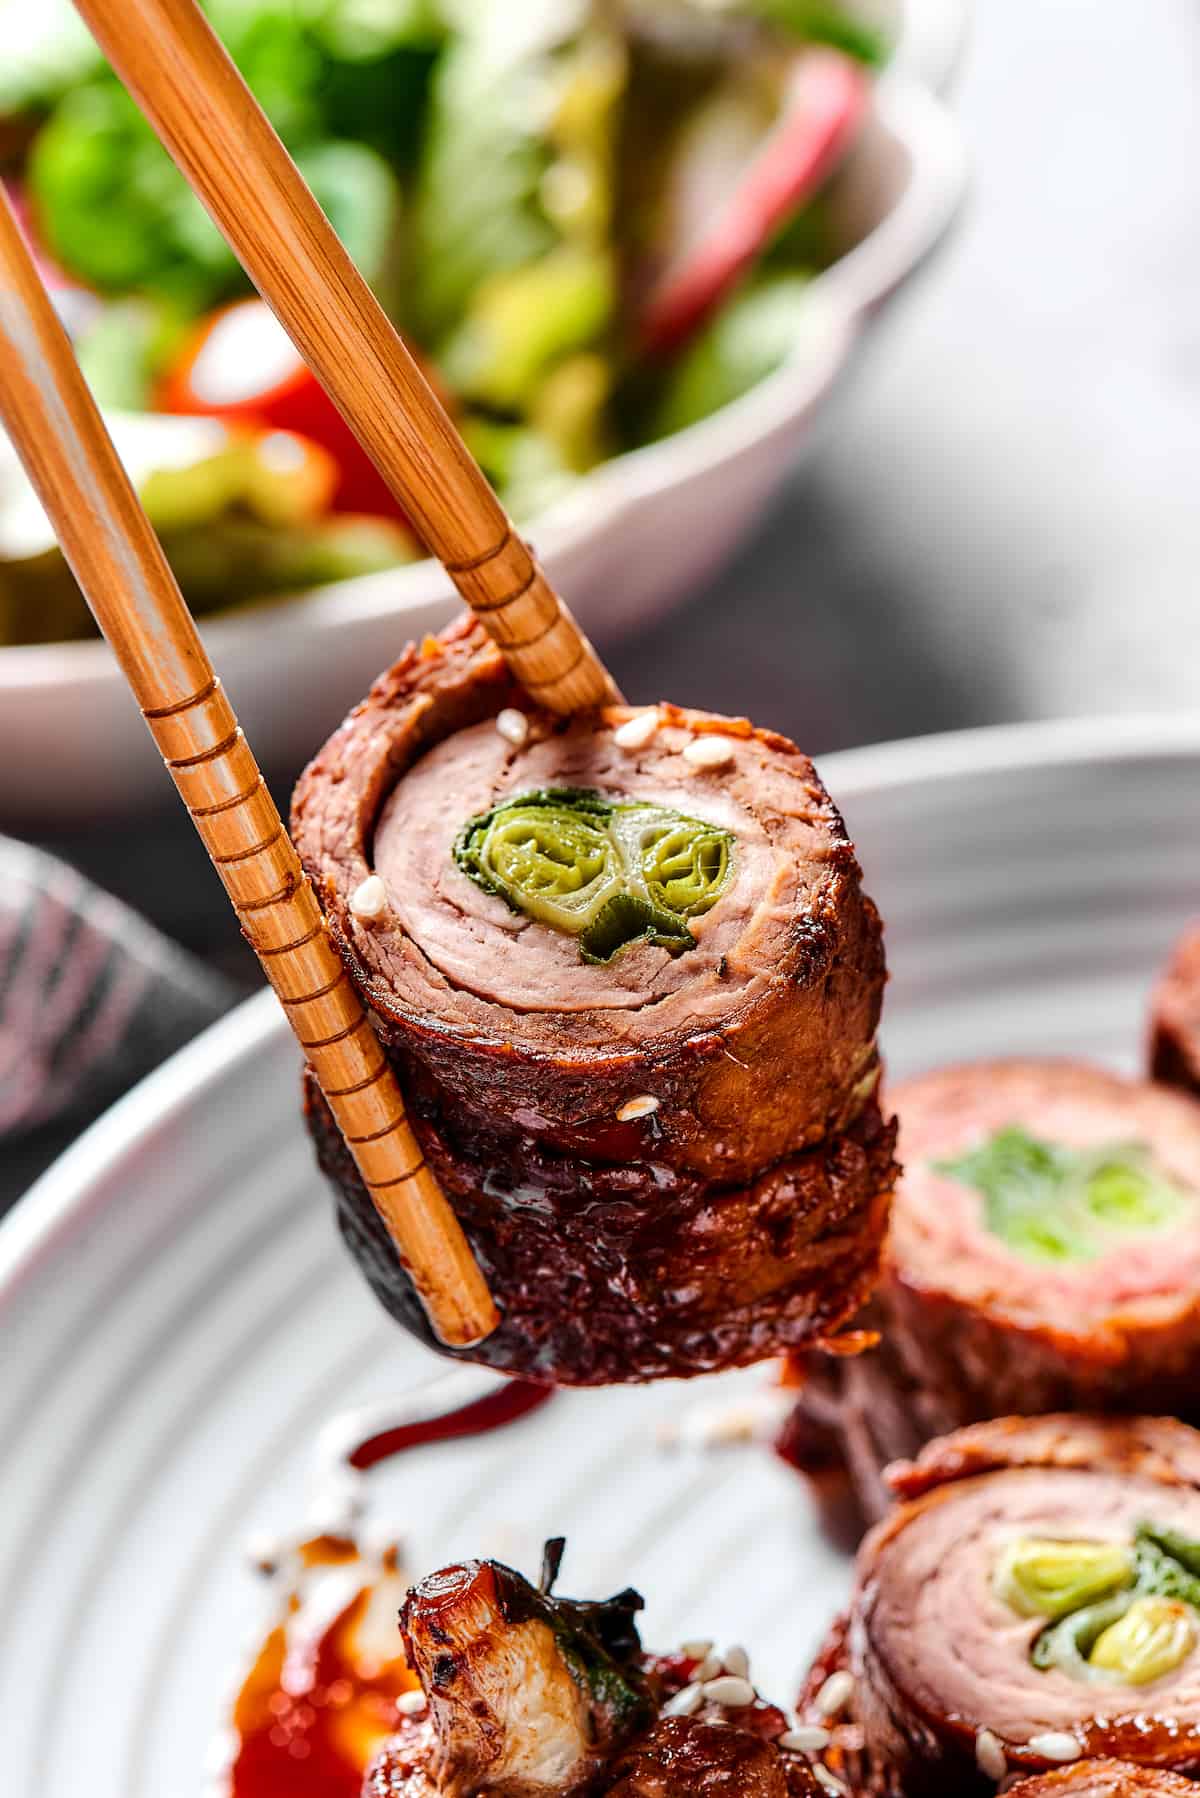 Chopsticks holding a beef negimaki roll